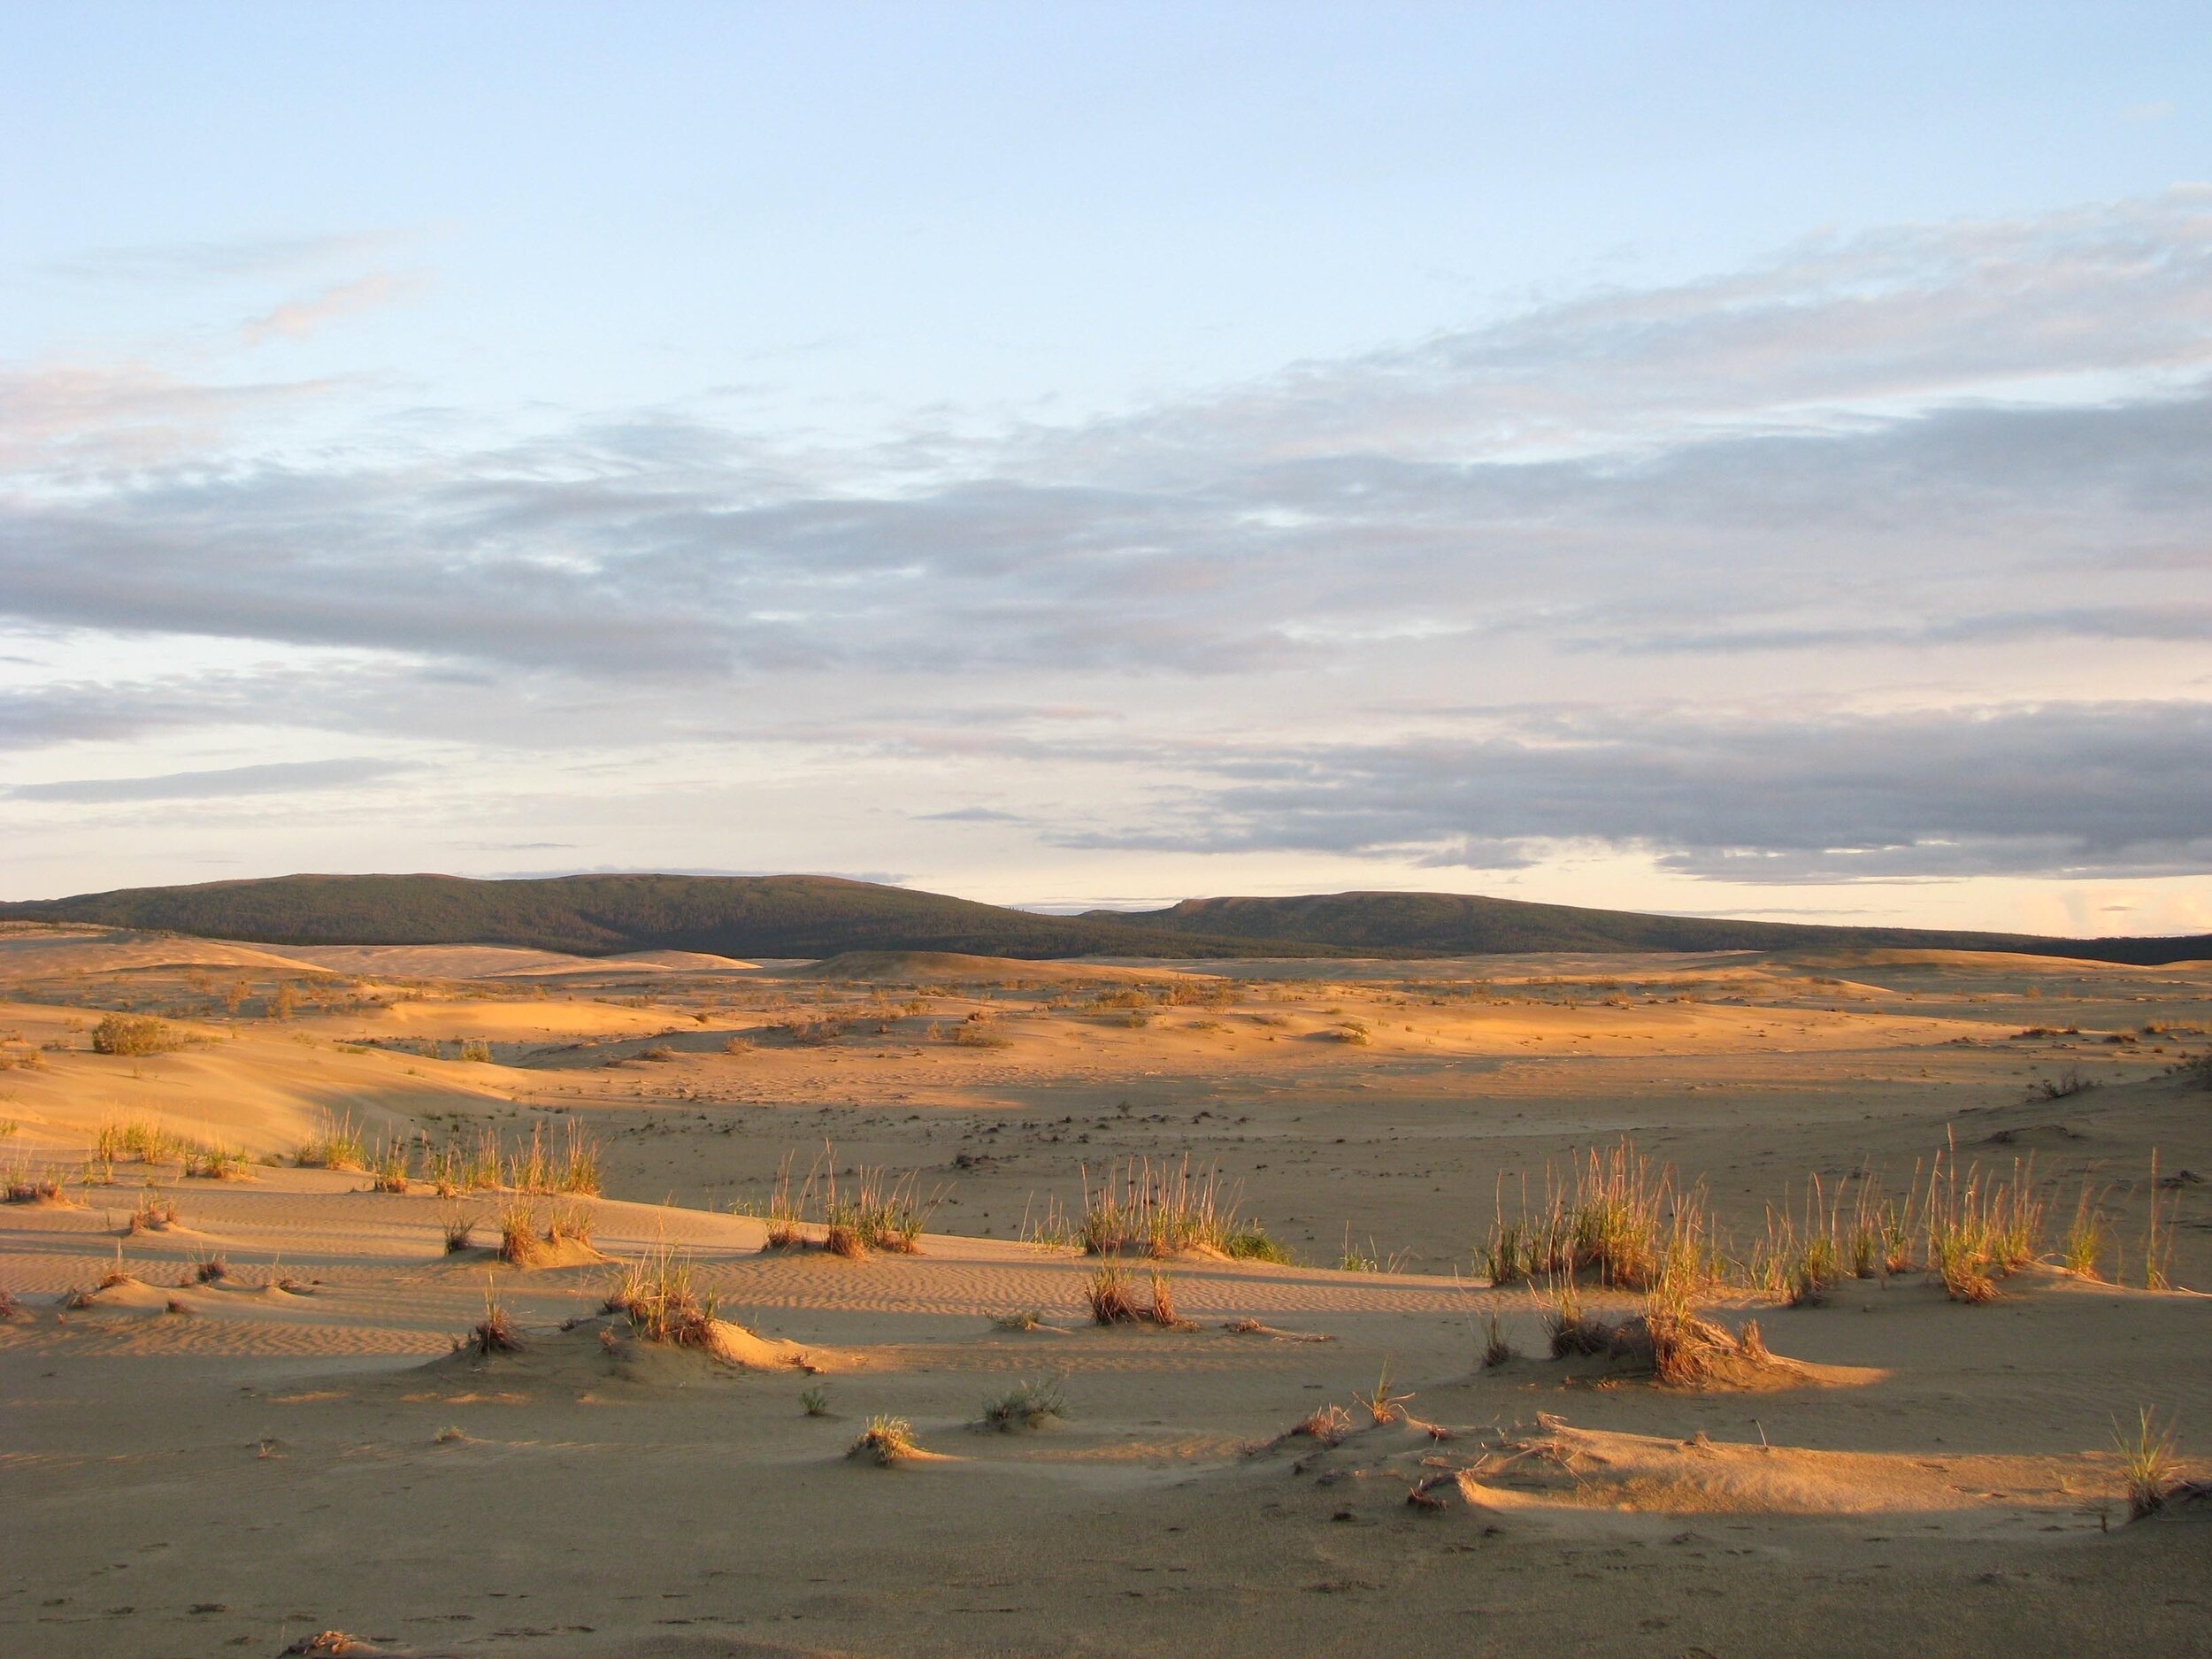 Kobuk Valley National Park includes striking sand dunes.